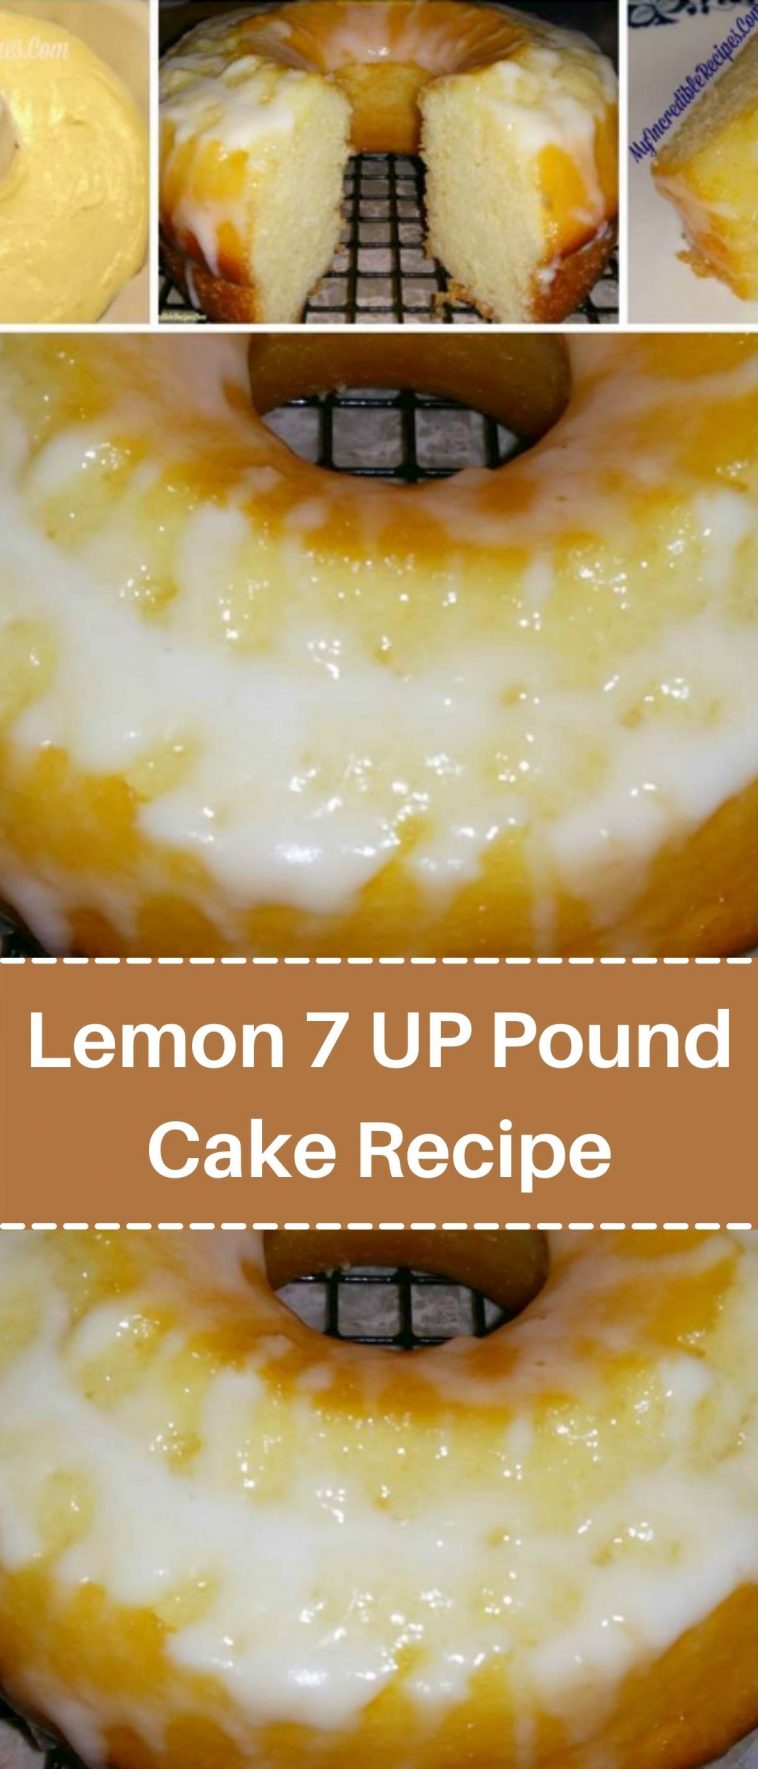 Lemon 7 UP Pound Cake Recipe